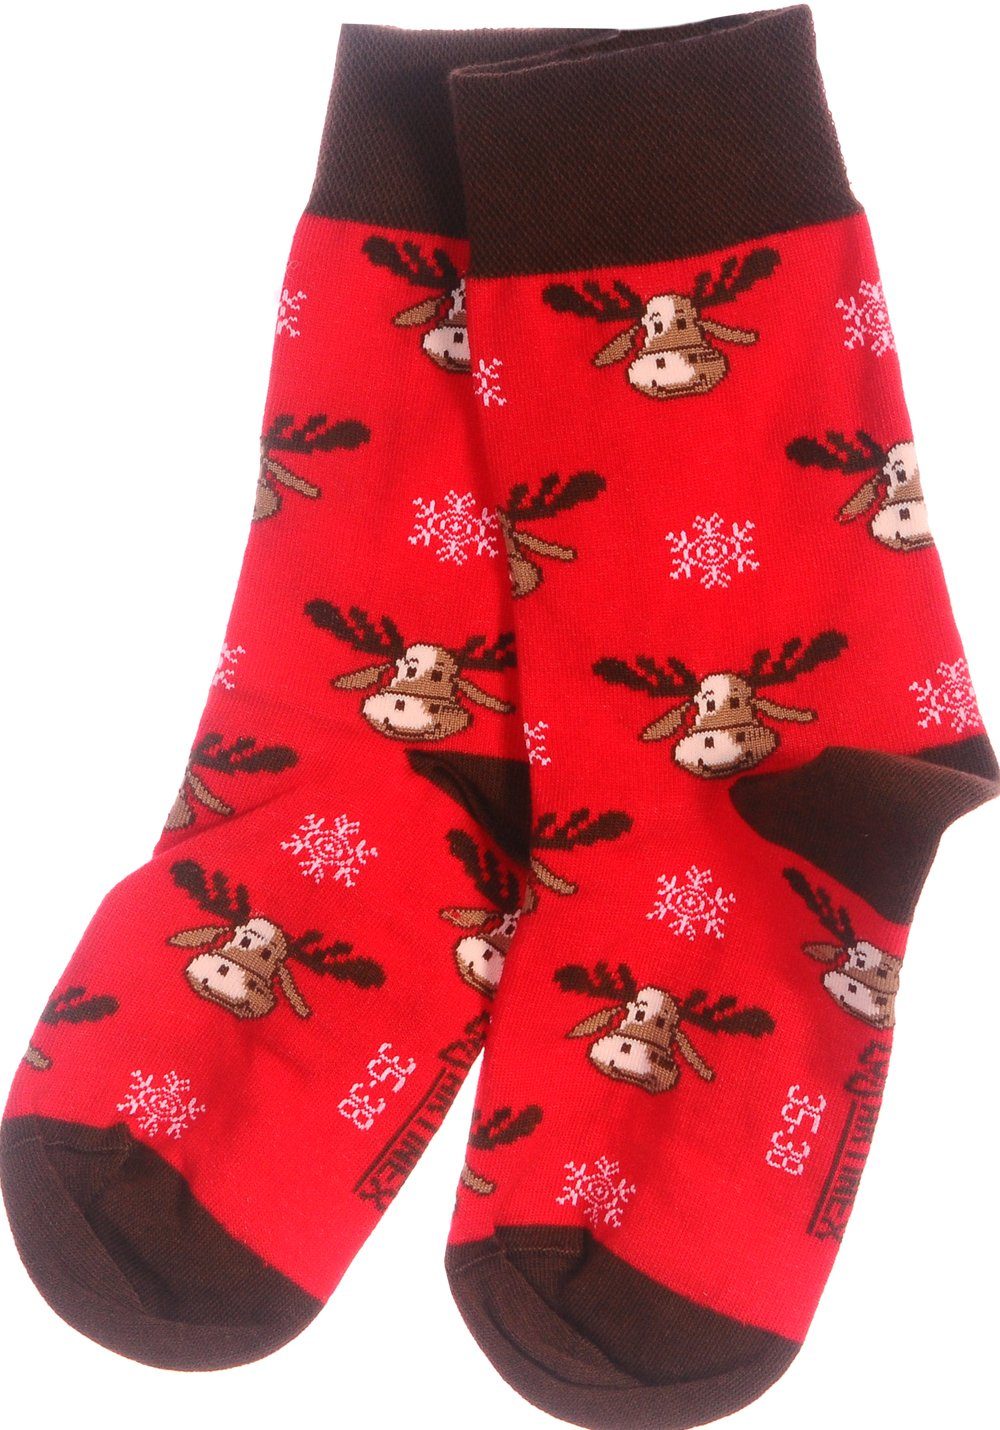 Martinex Socken 1 Paar Socken Strümpfe 27 31 35 38 39 42 43 46 Weihnachtssocken für die ganze Familie